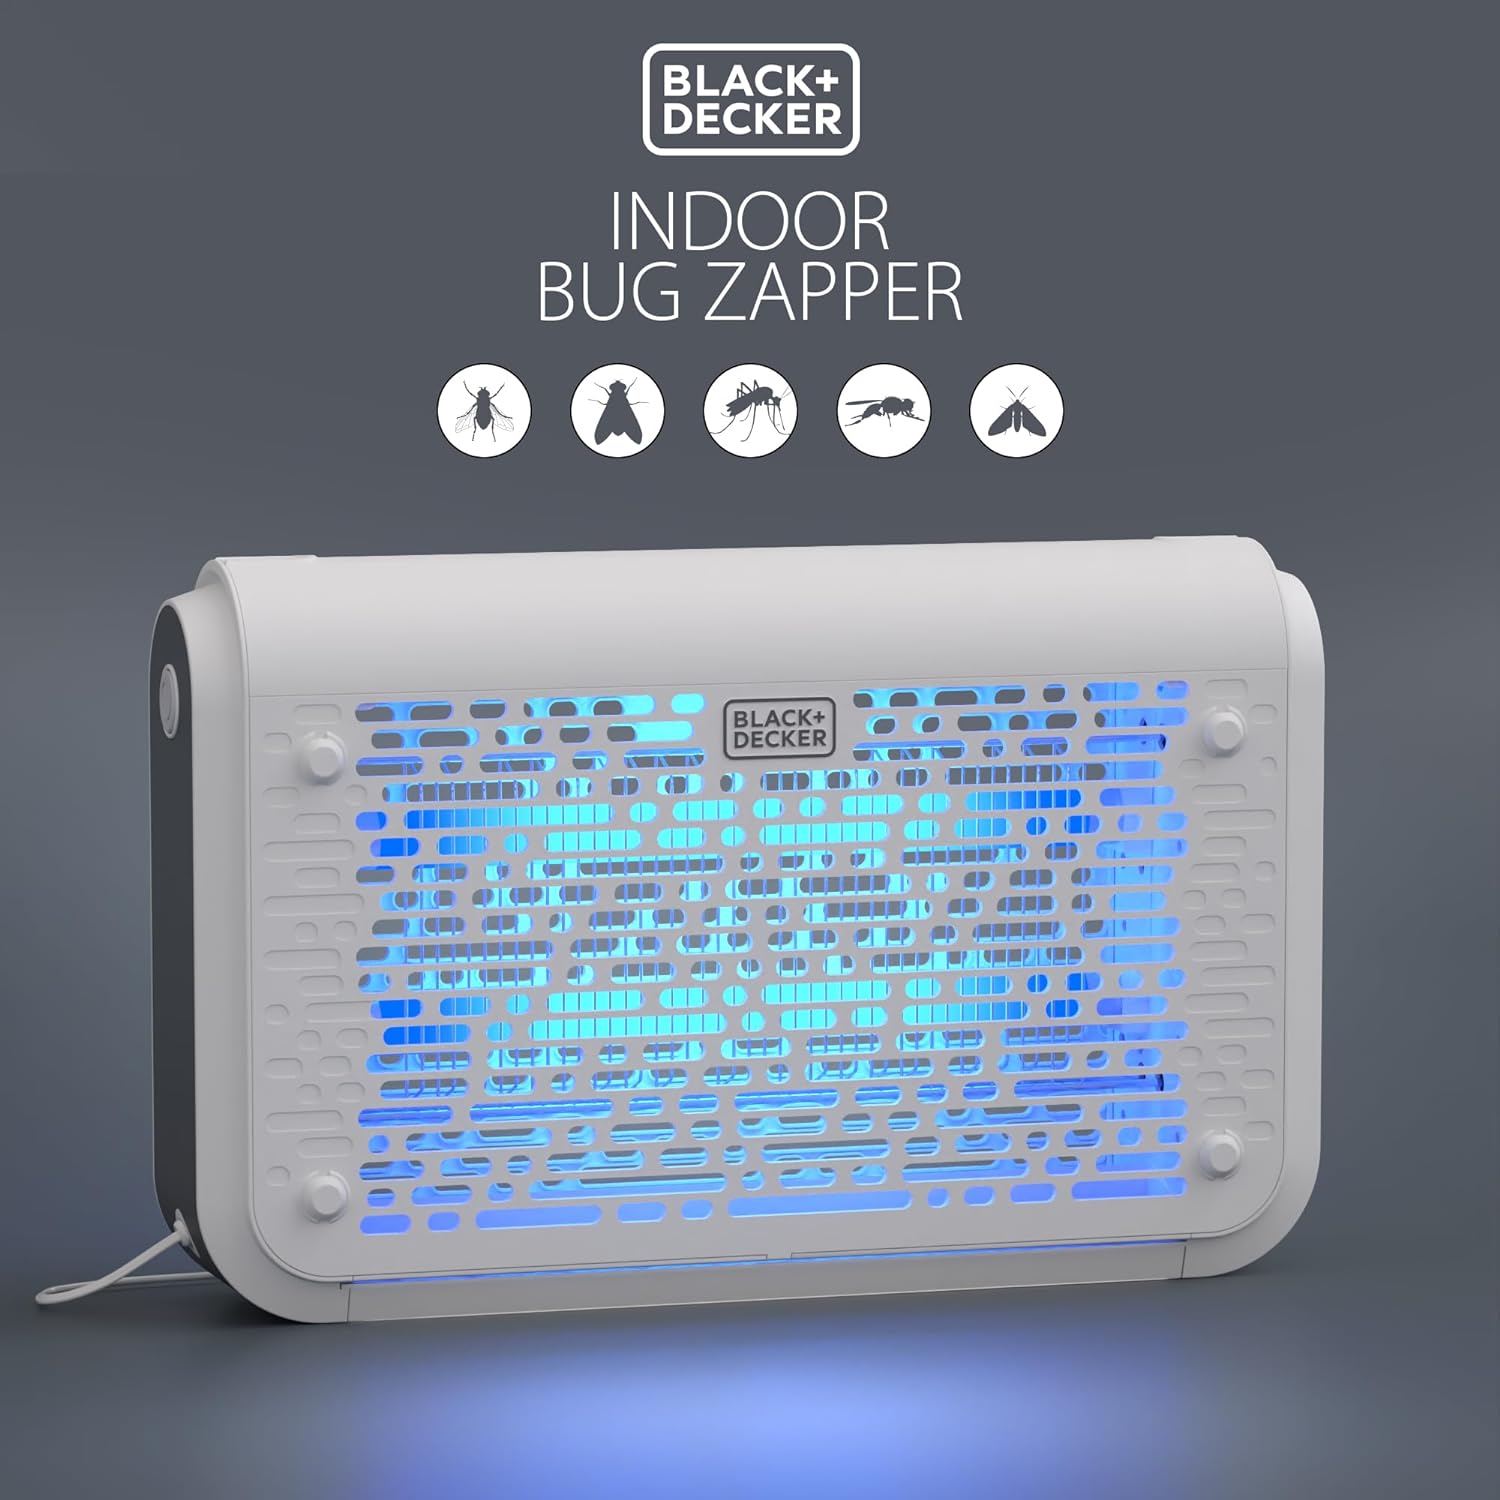 Black+decker Indoor Bug Zapper : Target